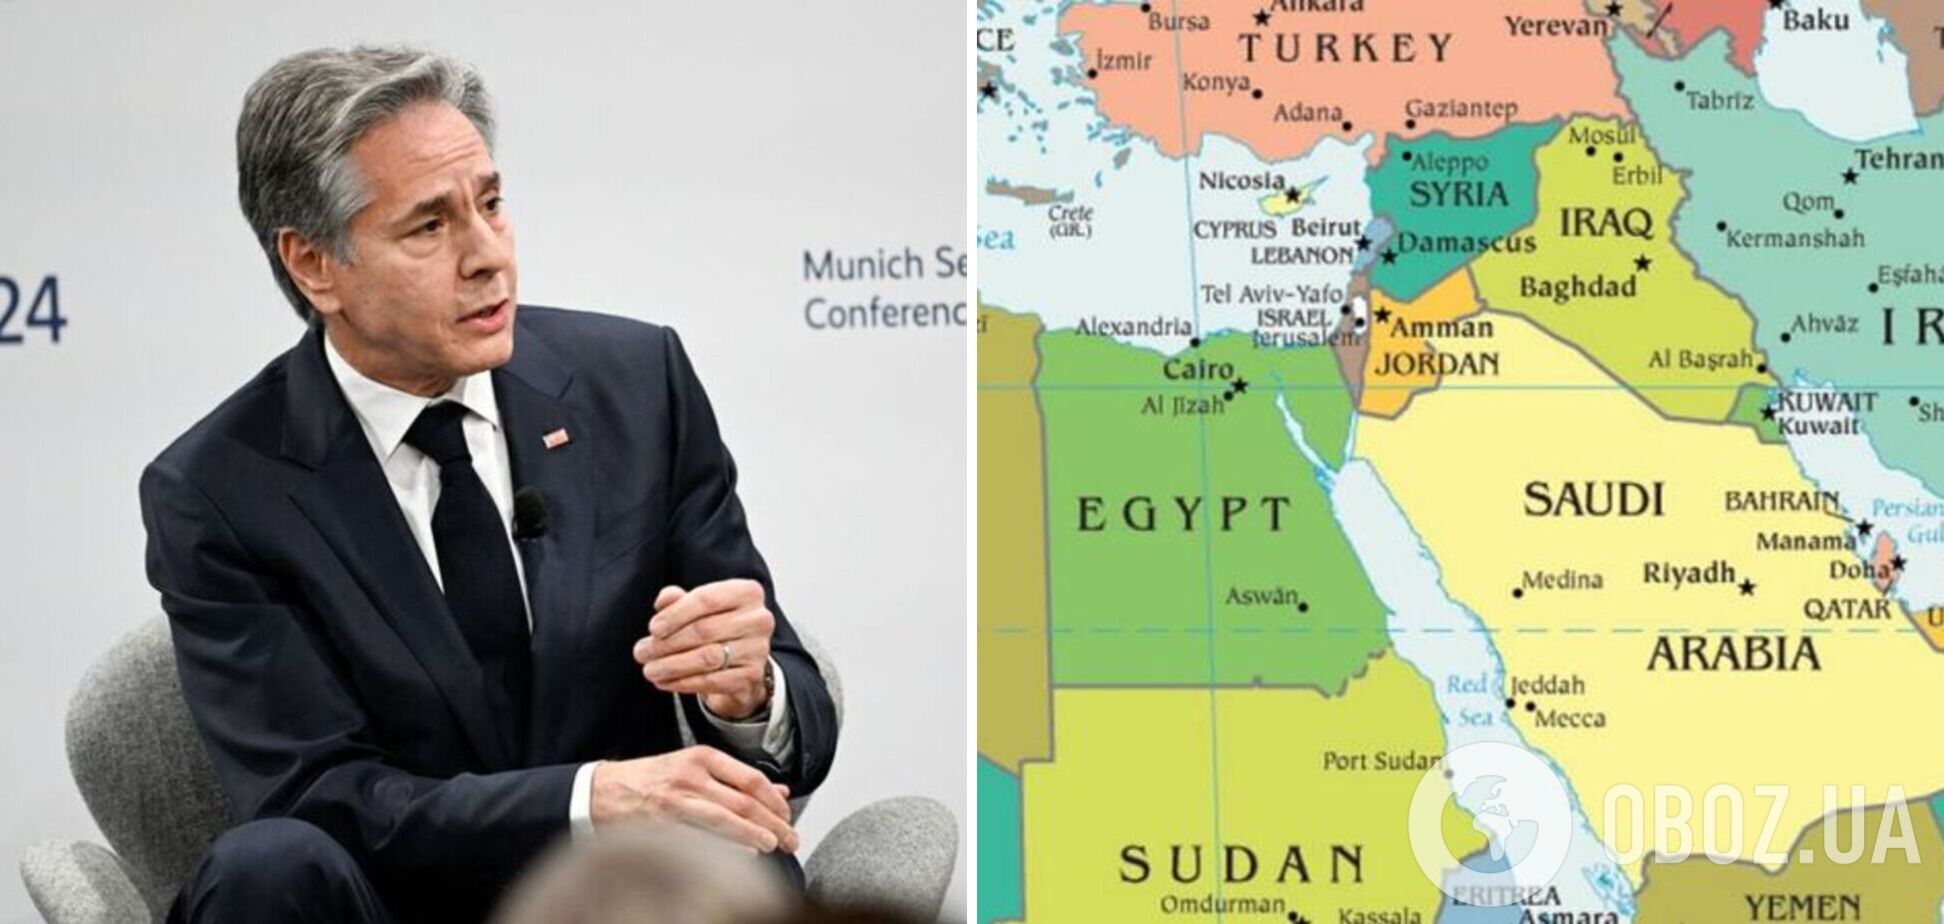 'Практично кожна арабська країна шукає зв'язків': Блінкен вказав на історичну можливість для Ізраїлю